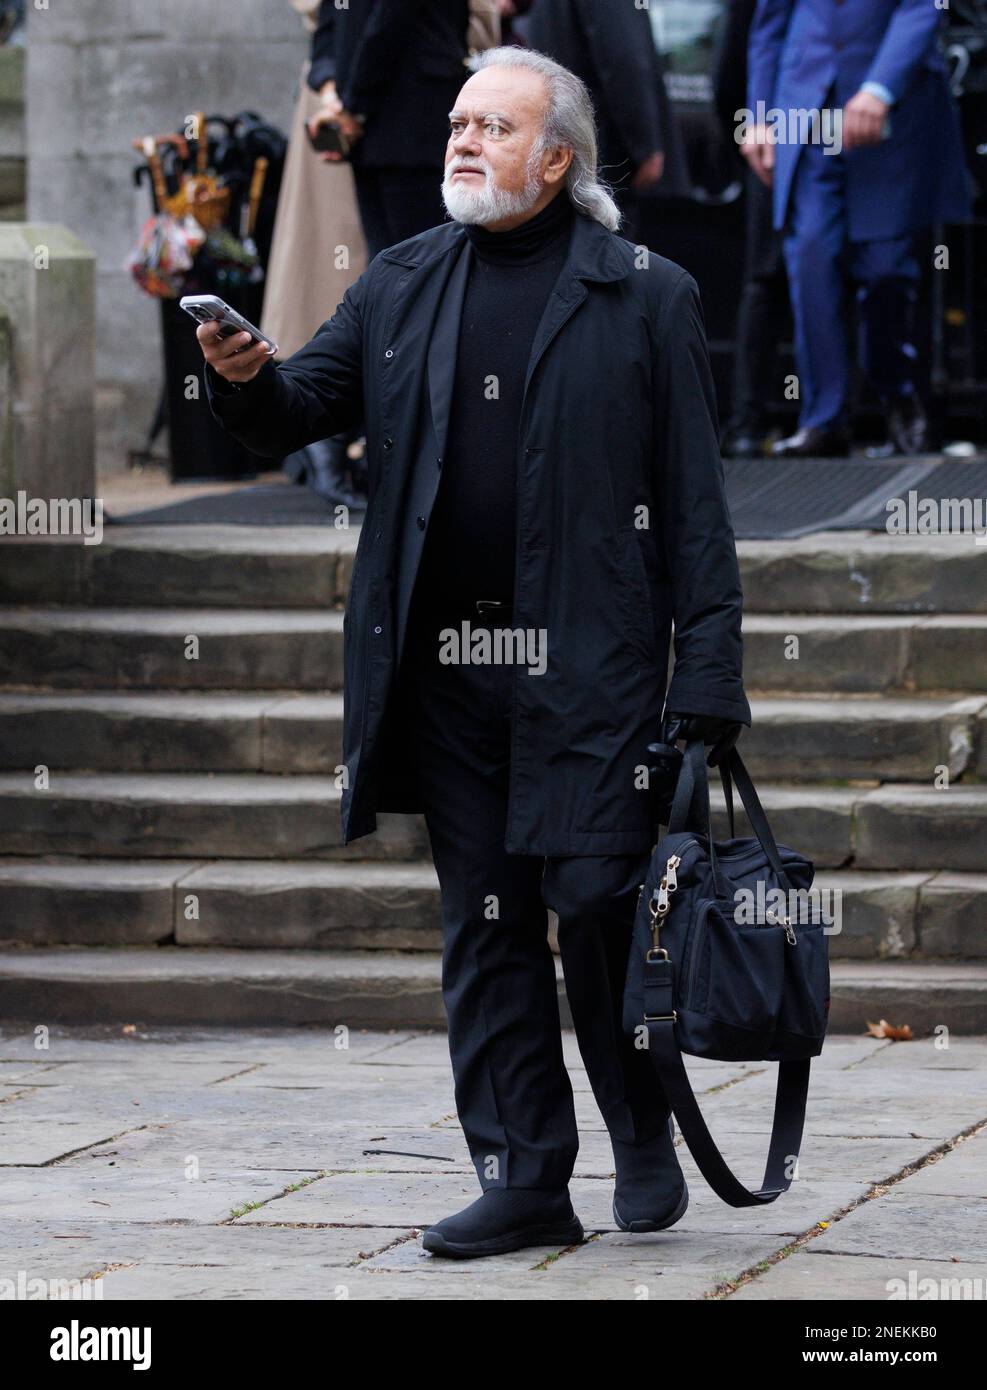 Londra, UK 16 Feb 2023 fotografo di celebrità, Dave Bennett. Famiglia, amici, celebrità e stelle del mondo della moda arrivano alla Southwark Cathedral per assistere a un servizio commemorativo in memoria di Dame Vivienne Westwood. Foto Stock